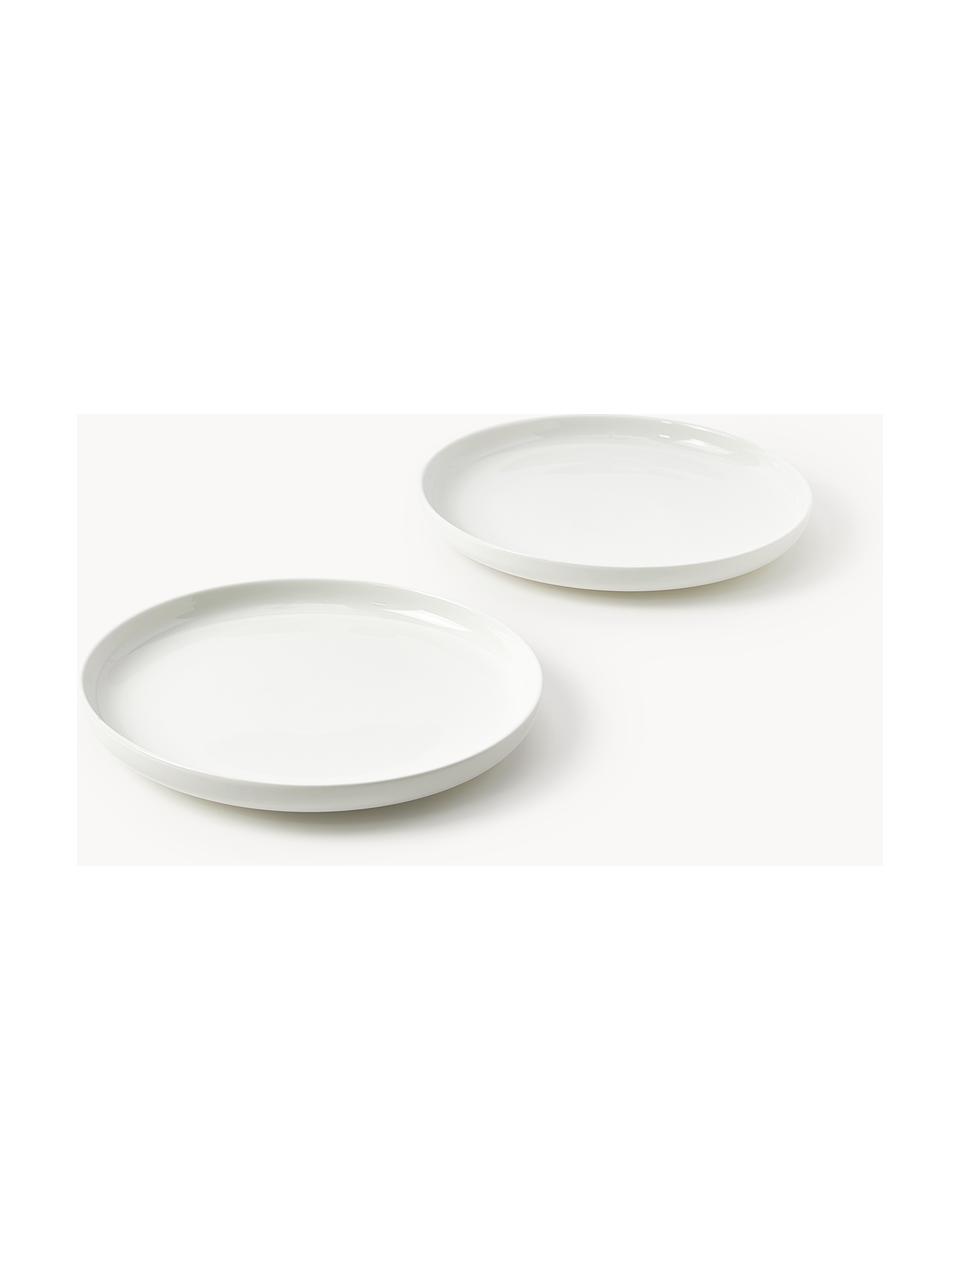 Porzellan-Speiseteller Nessa, 4 Stück, Hochwertiges Hartporzellan, glasiert, Off White, glänzend, Ø 26 cm